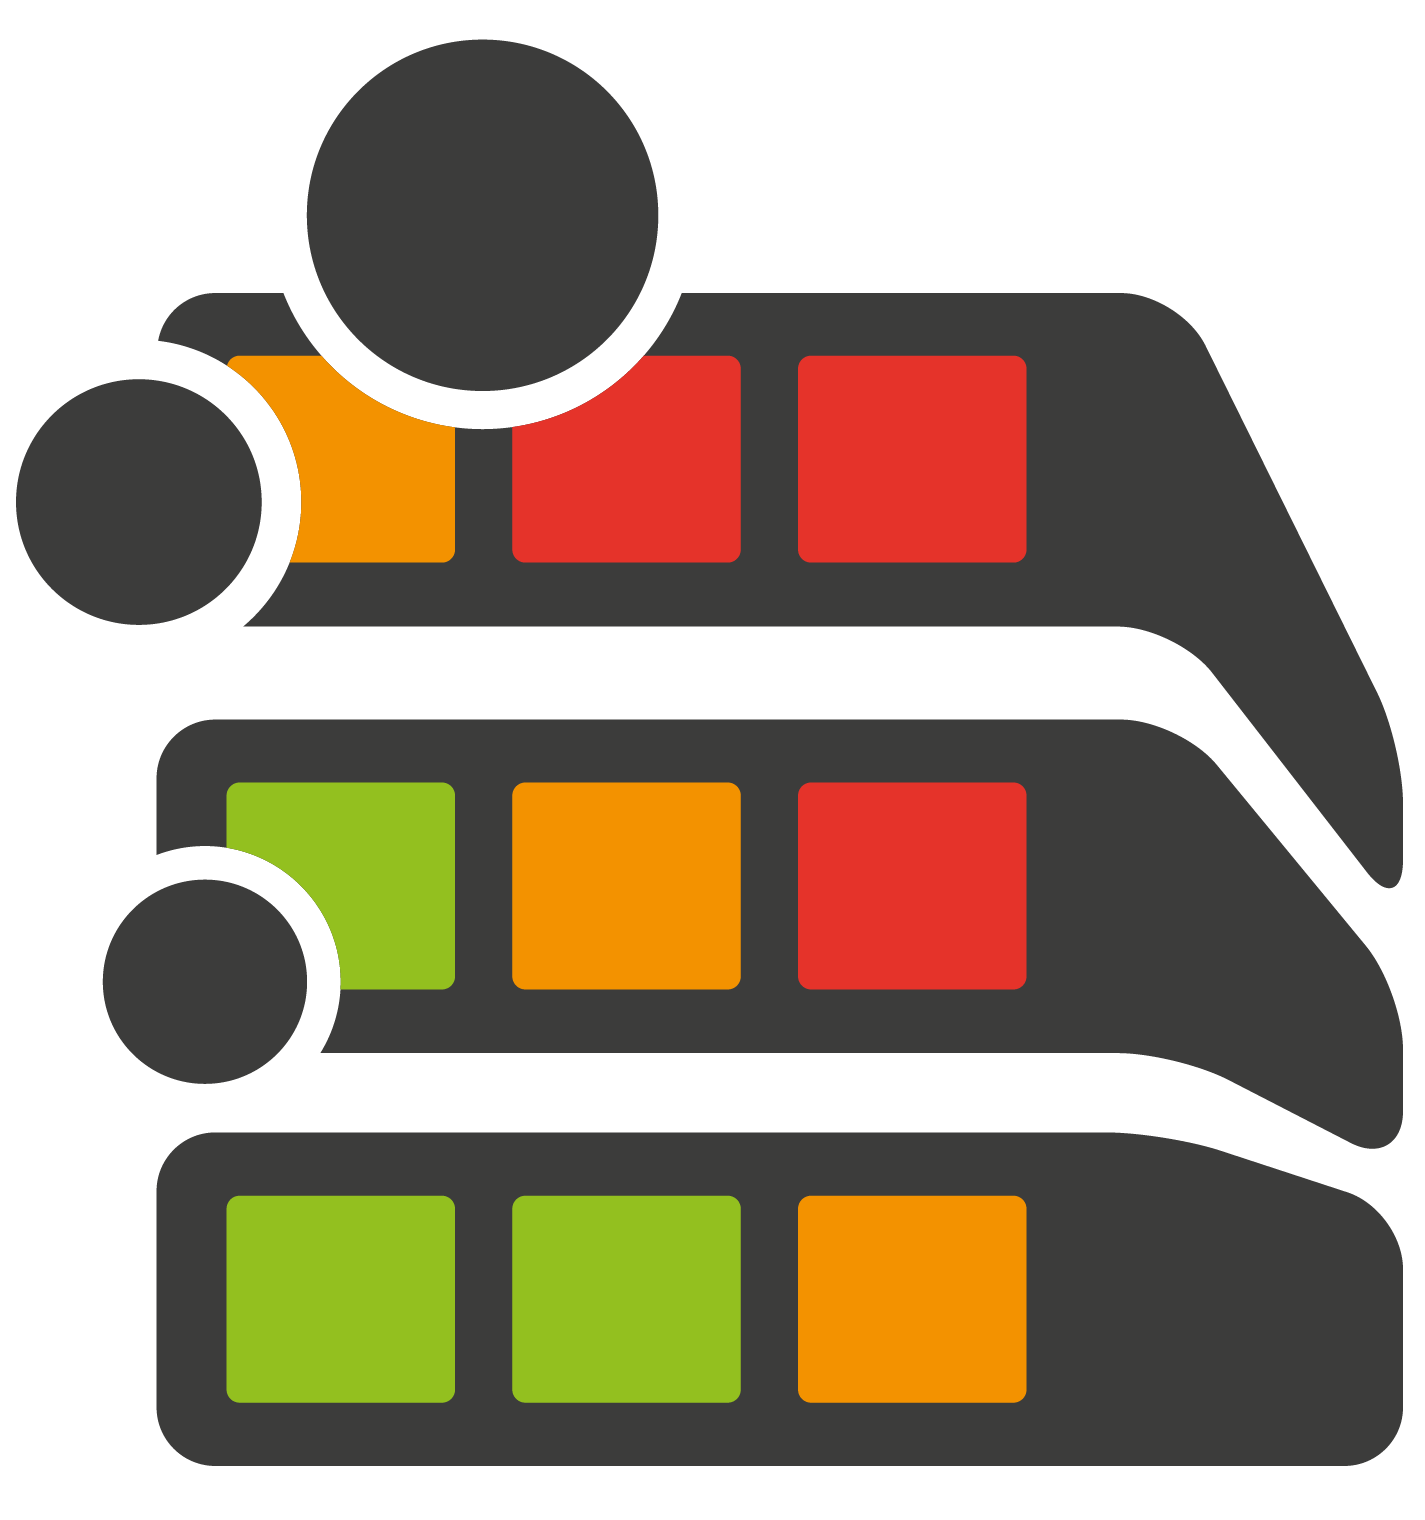 Risk Manager Logo - Quadratische Form mit den Farben orange, rot und grün und drei Kreisen im linken oberen Bereich